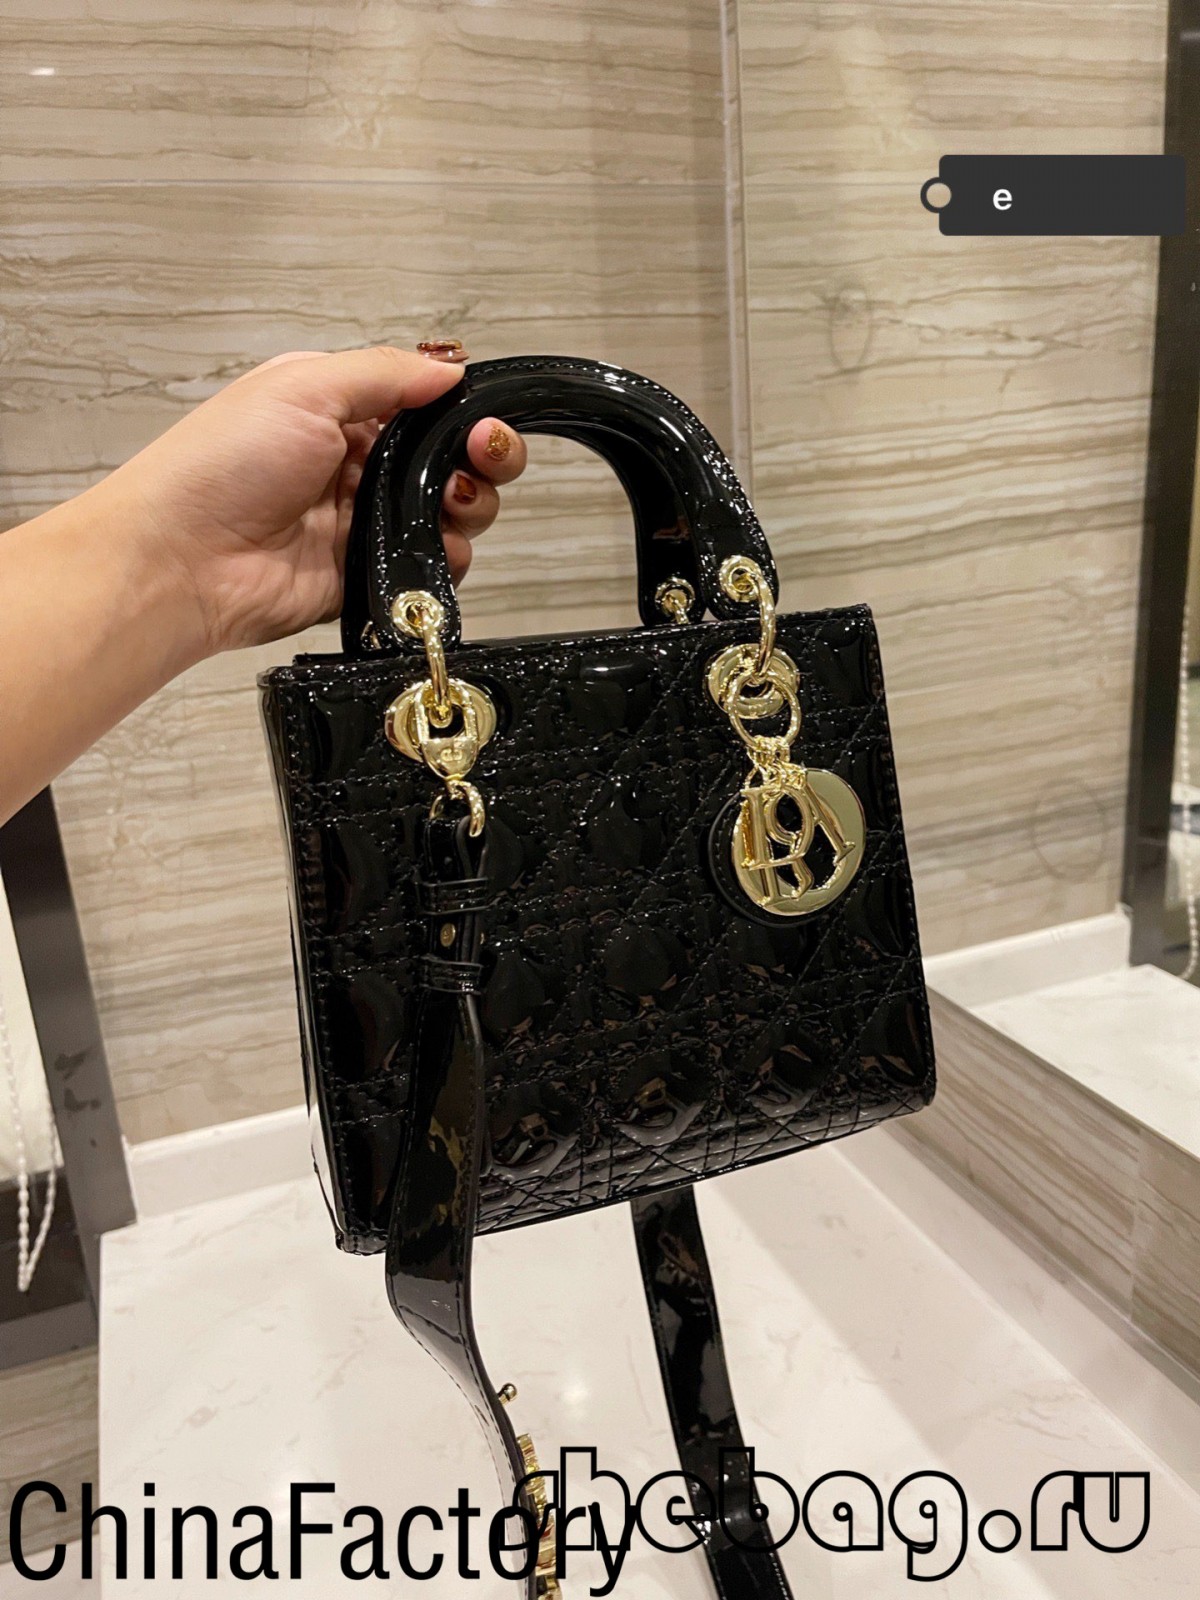 Top Qualitéit Replica Lady Dior Mini Bag Online Verkaf (2022 Hottest)-Bescht Qualitéit Fake Louis Vuitton Bag Online Store, Replica Designer Bag ru